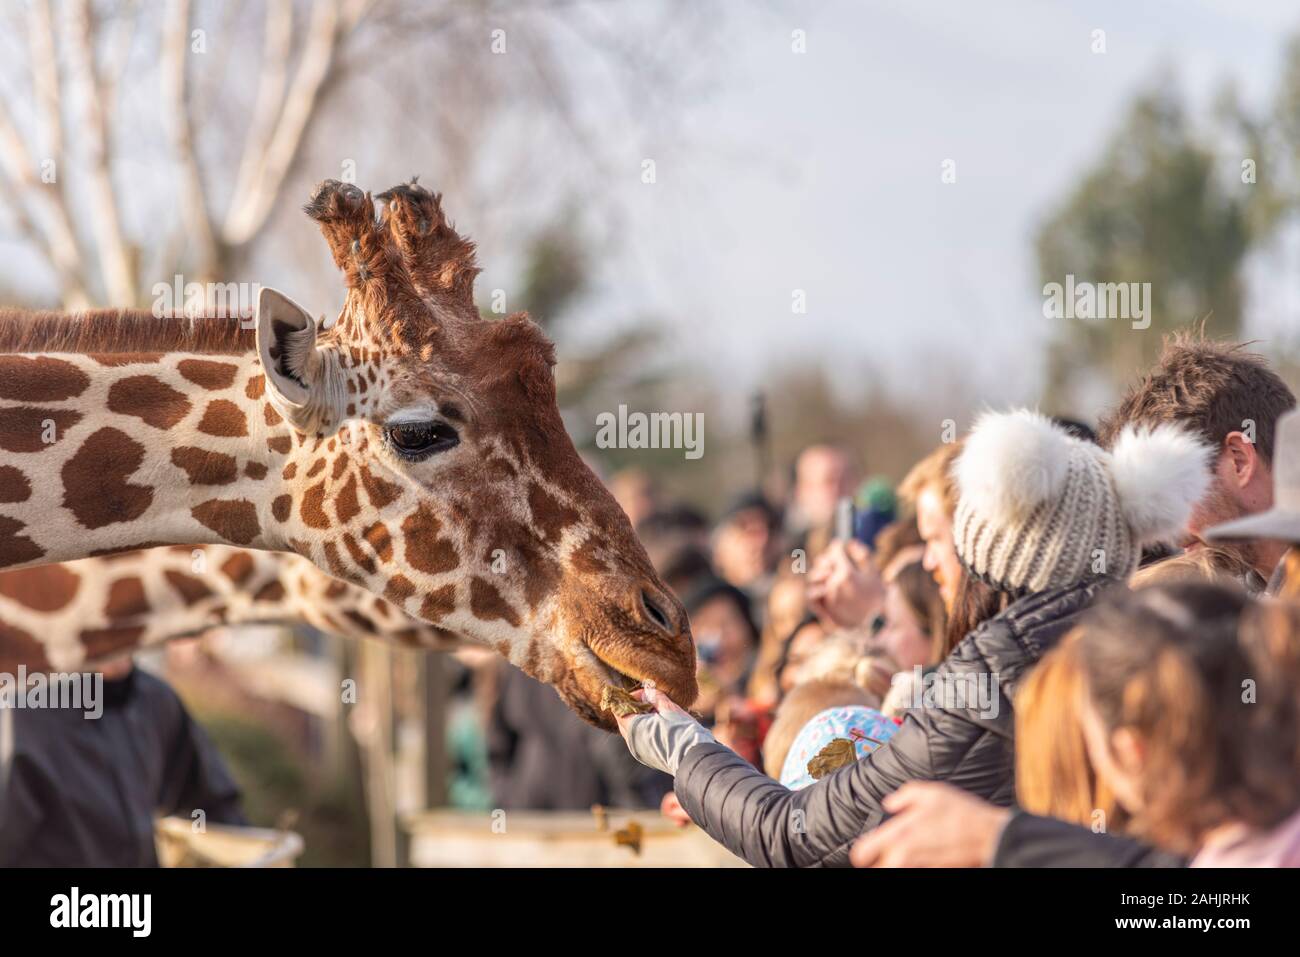 Die Fütterung der Giraffen im Zoo in Colchester, Essex, UK. Netzgiraffe, Giraffa Camelopardalis reticulata. Publikumsmagnet Besucher Fütterung der Tiere Stockfoto